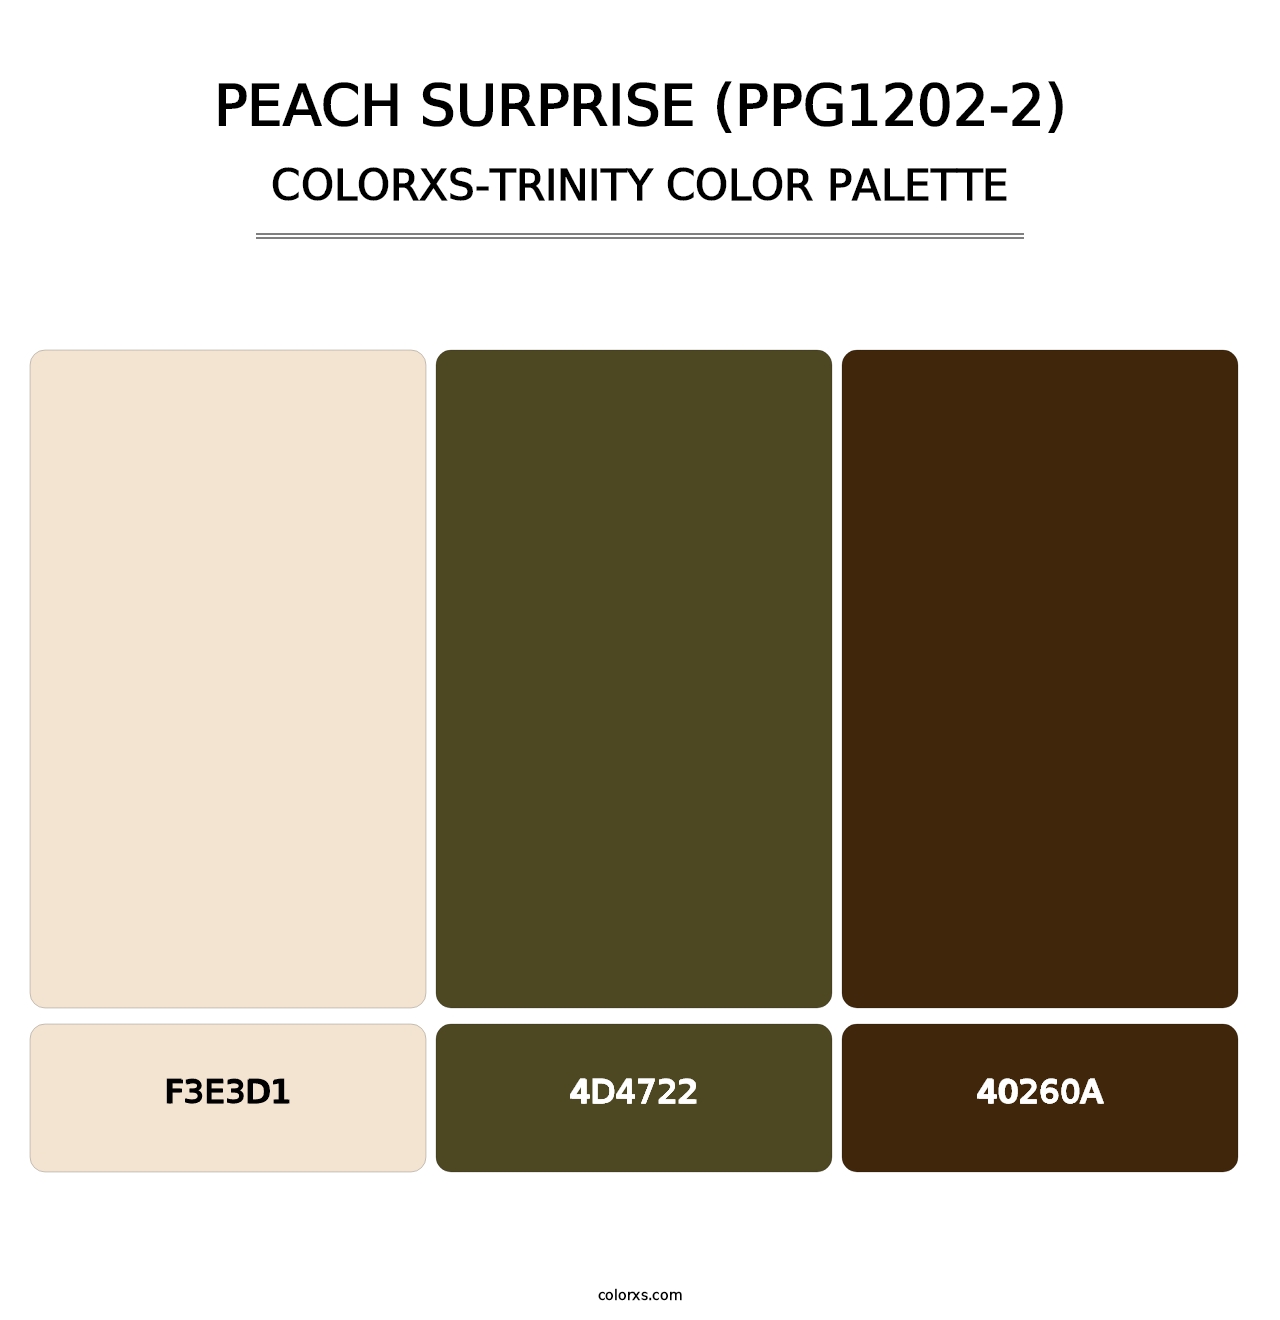 Peach Surprise (PPG1202-2) - Colorxs Trinity Palette